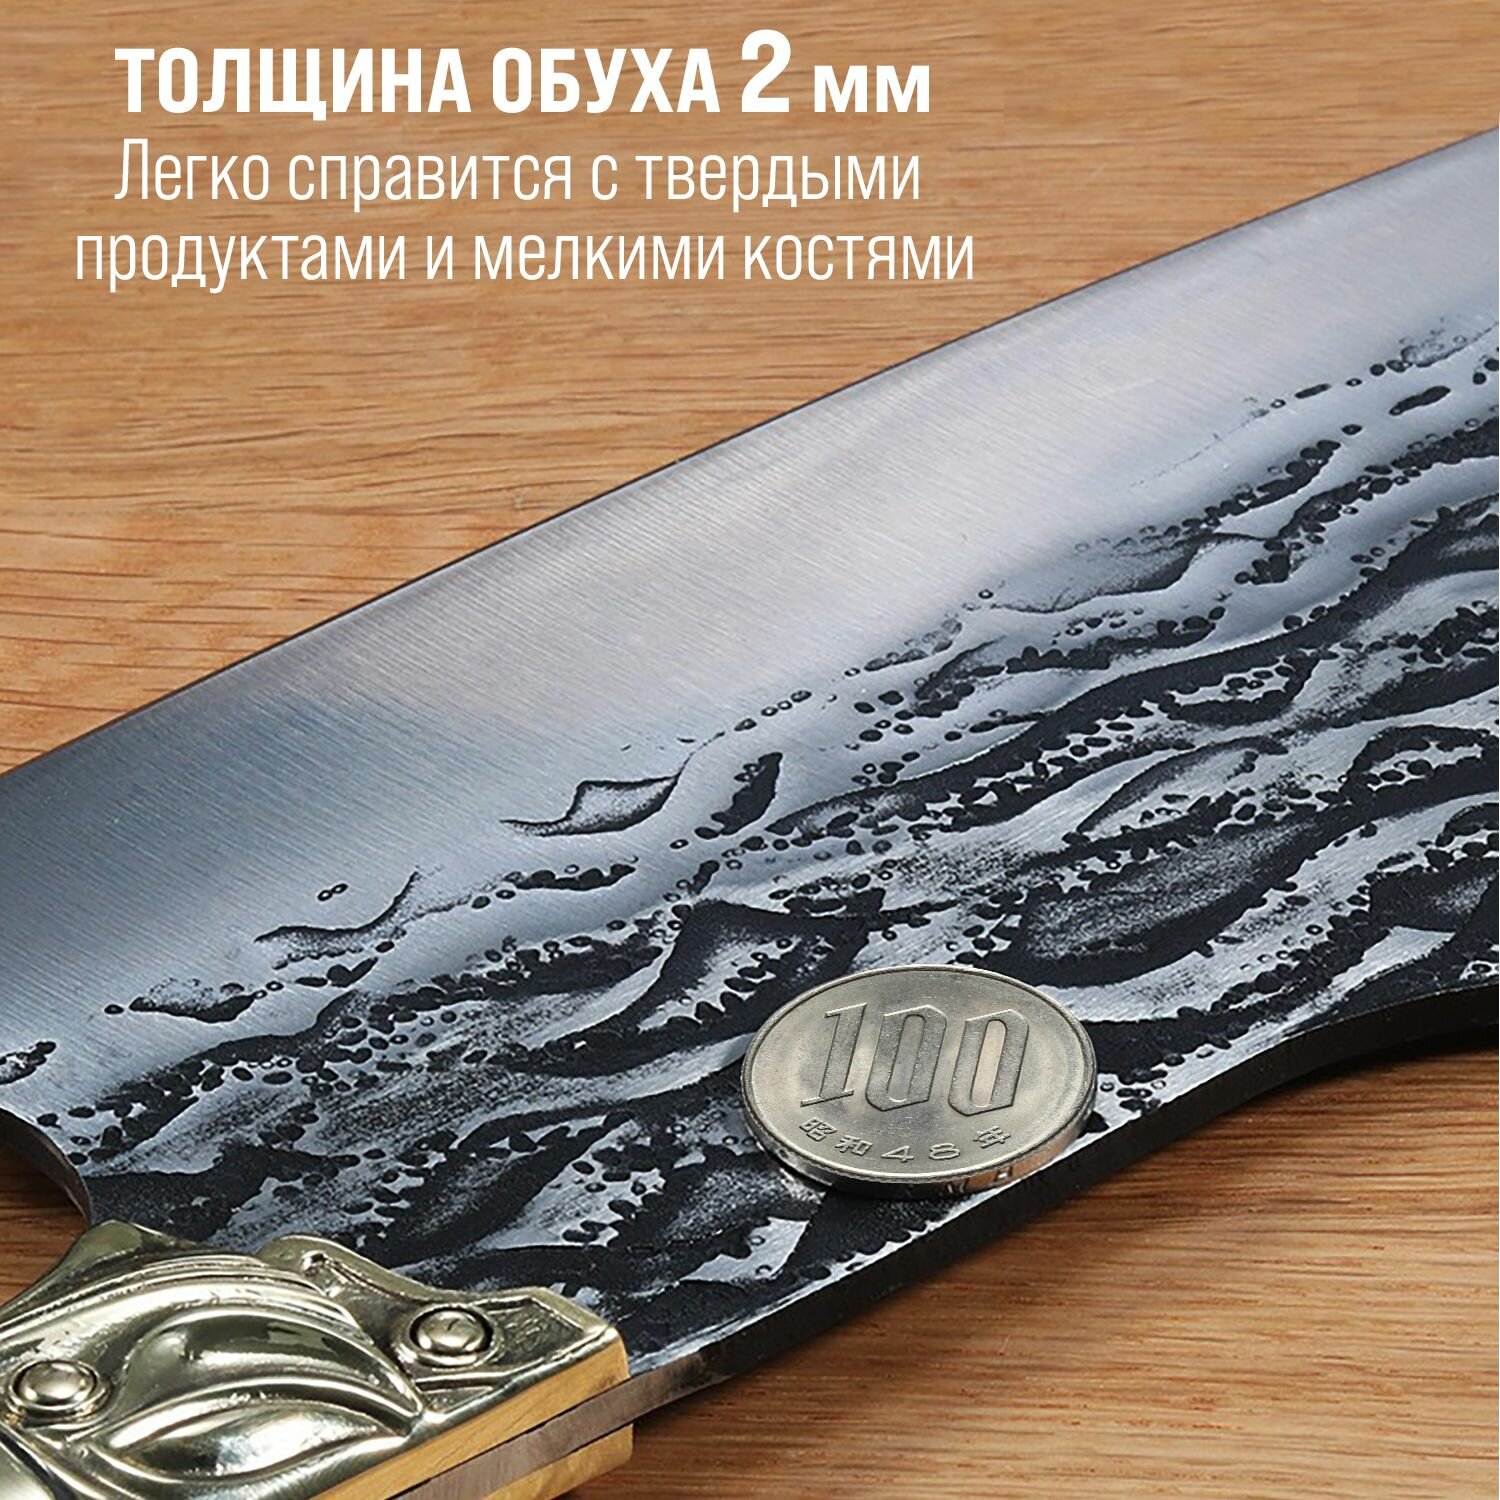 Японский кухонный нож - топорик Kimatsugi Fujin Pro / Нож для разделки мяса / Японская сталь AUS-8 / Длина лезвия 20 см